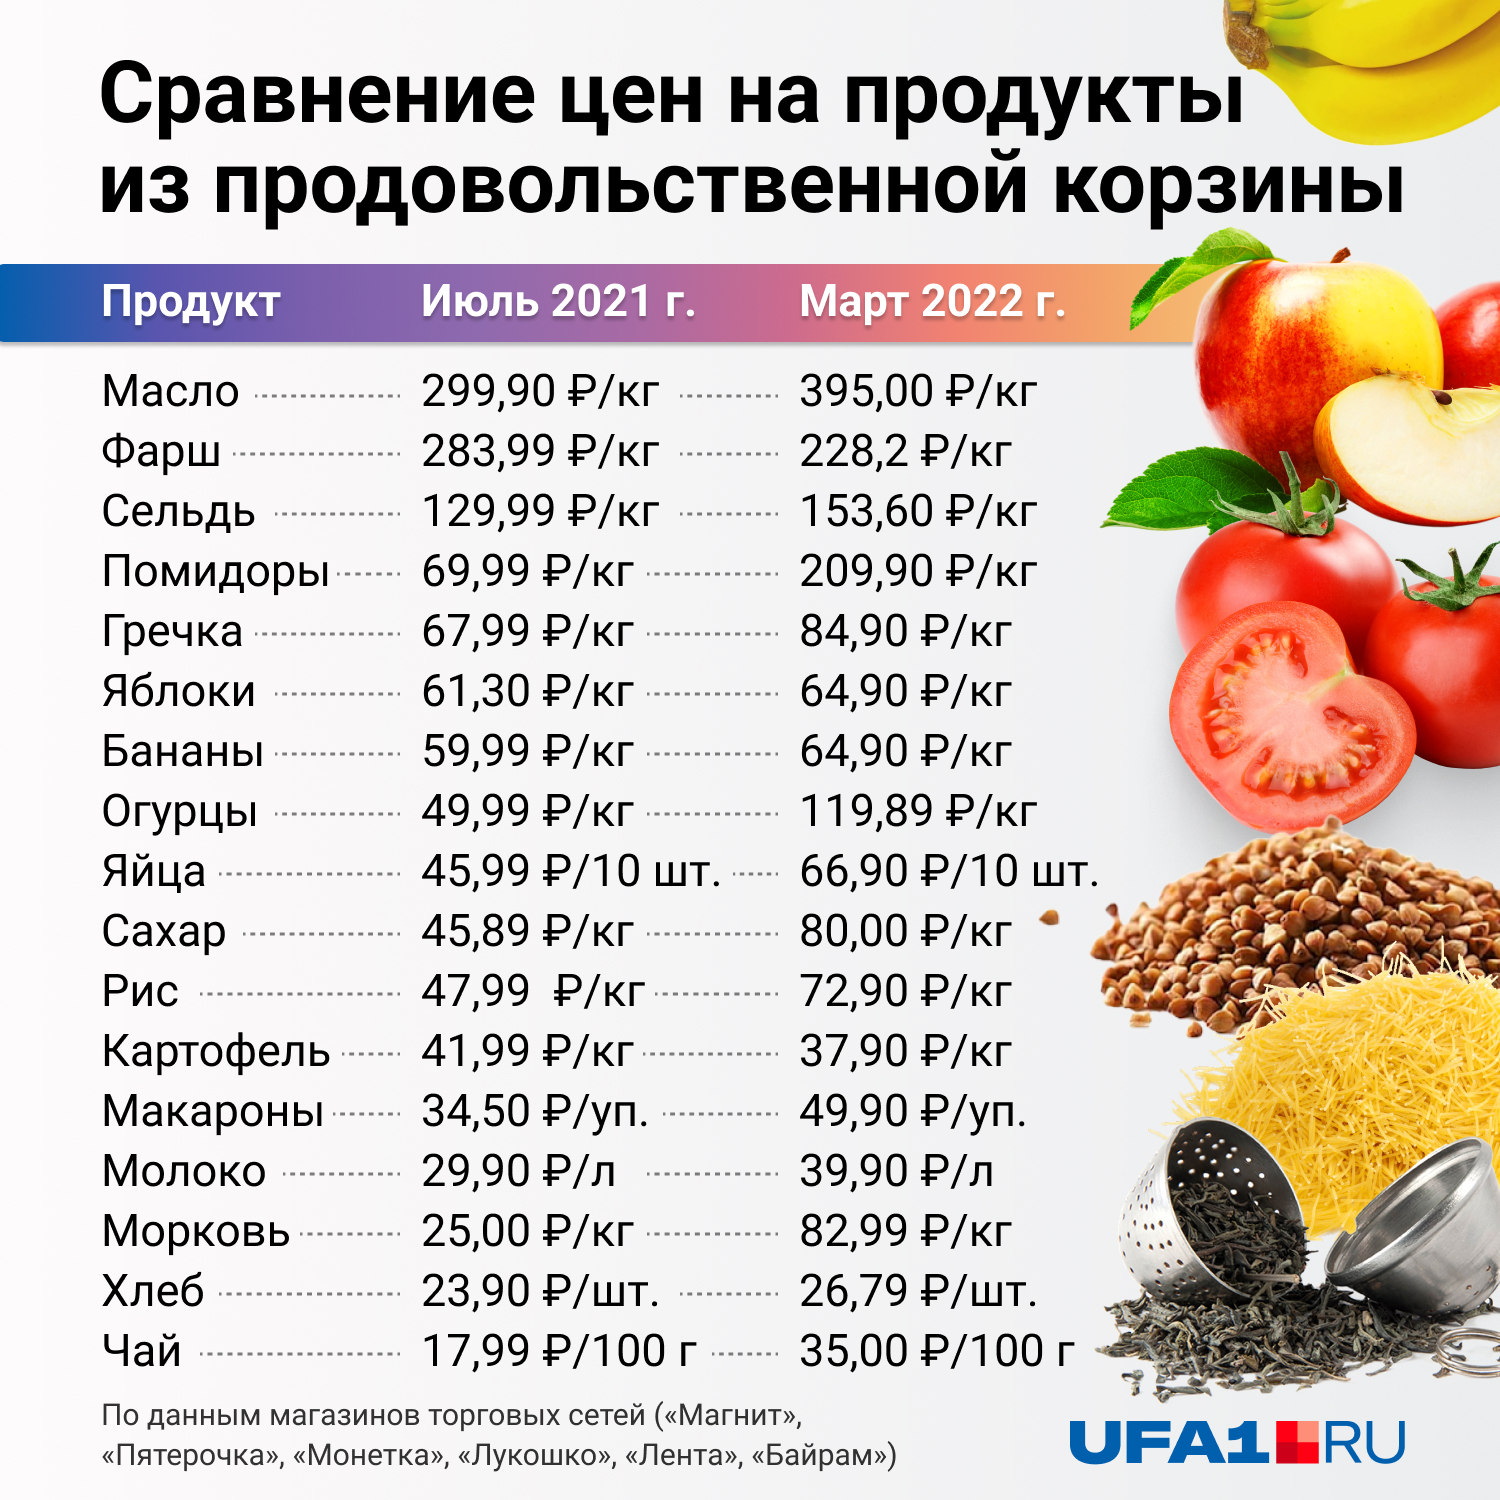 Сравнение цен на продукты из продовольственной корзины. 